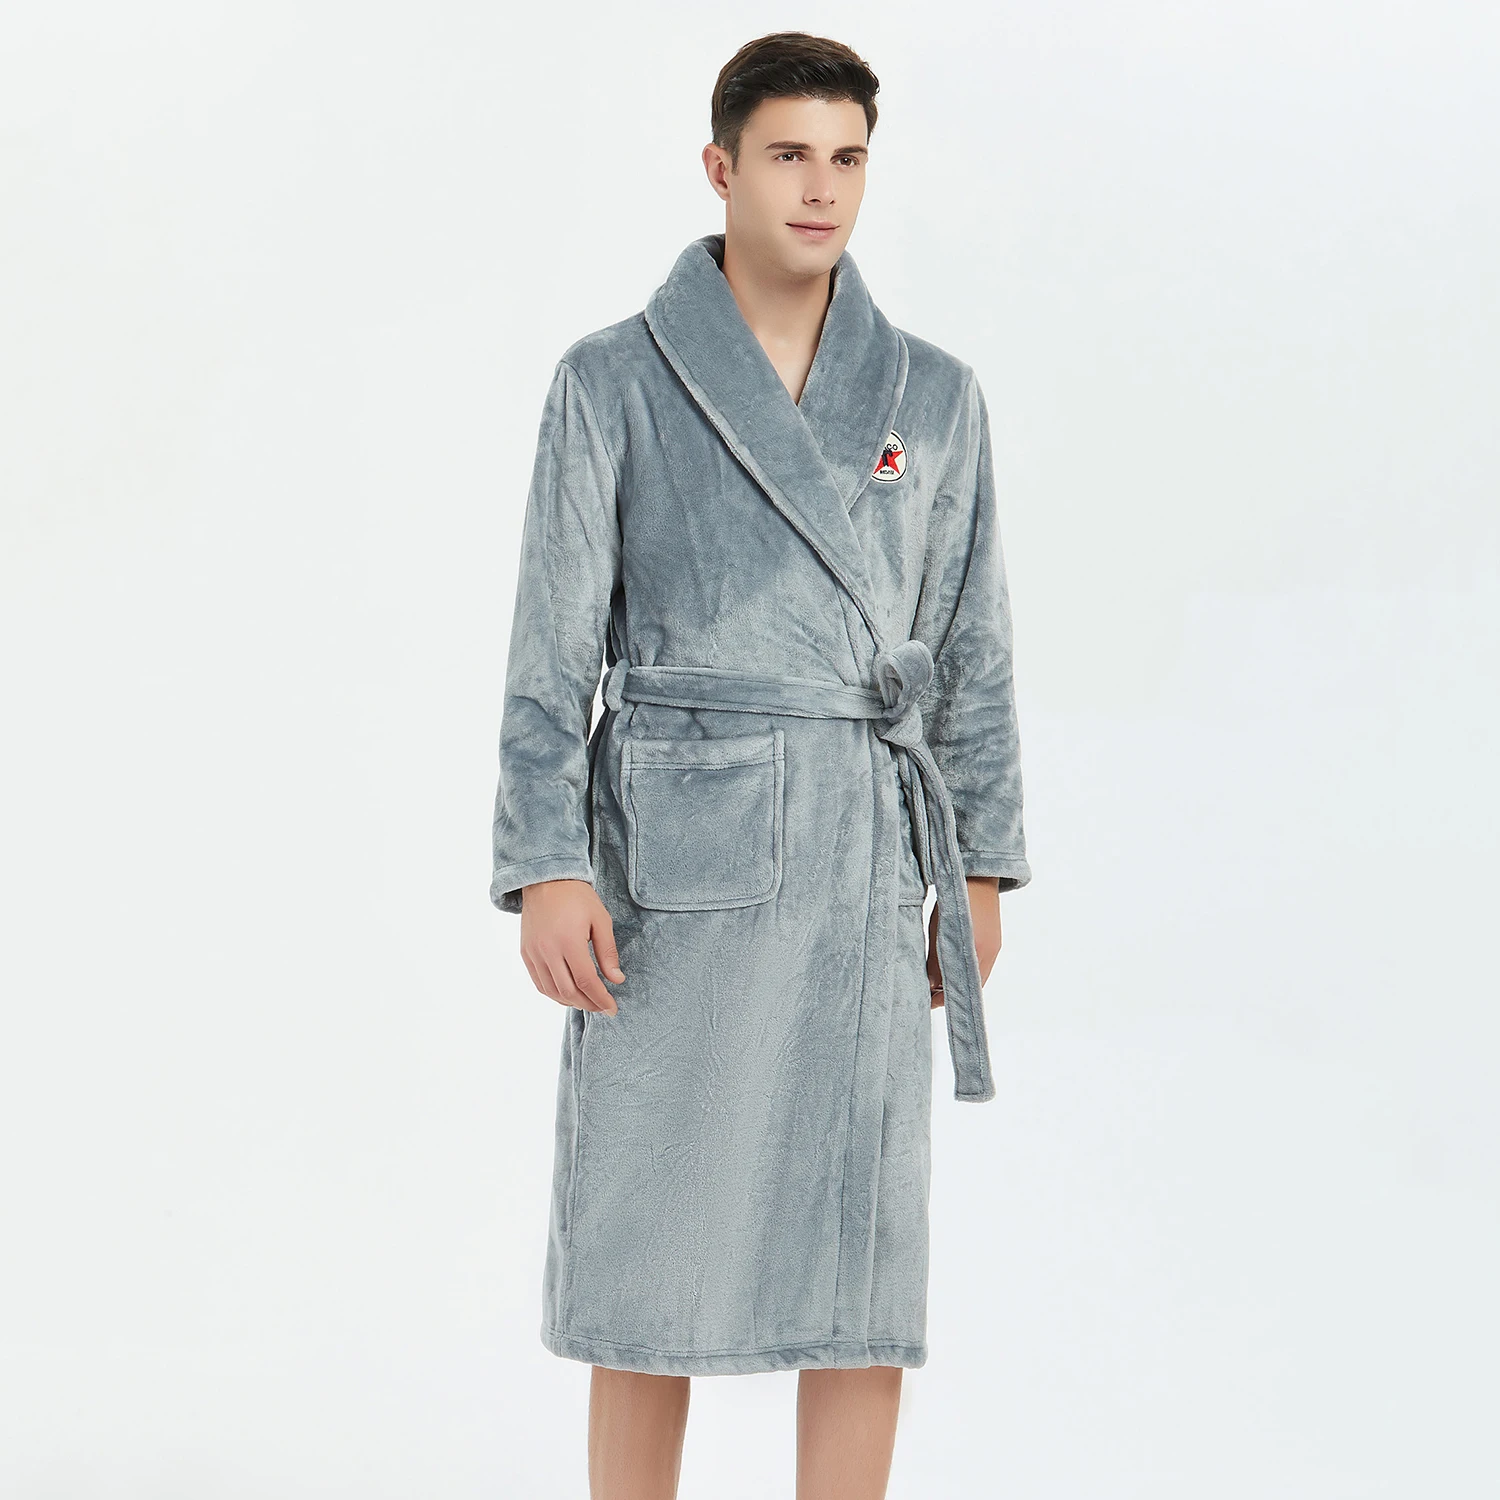 Повседневный мужской халат, кимоно, халат, зимняя фланелевая теплая одежда для сна, ночная рубашка, сексуальная утолщенная, для дома, мягкое, интимное белье, домашняя одежда